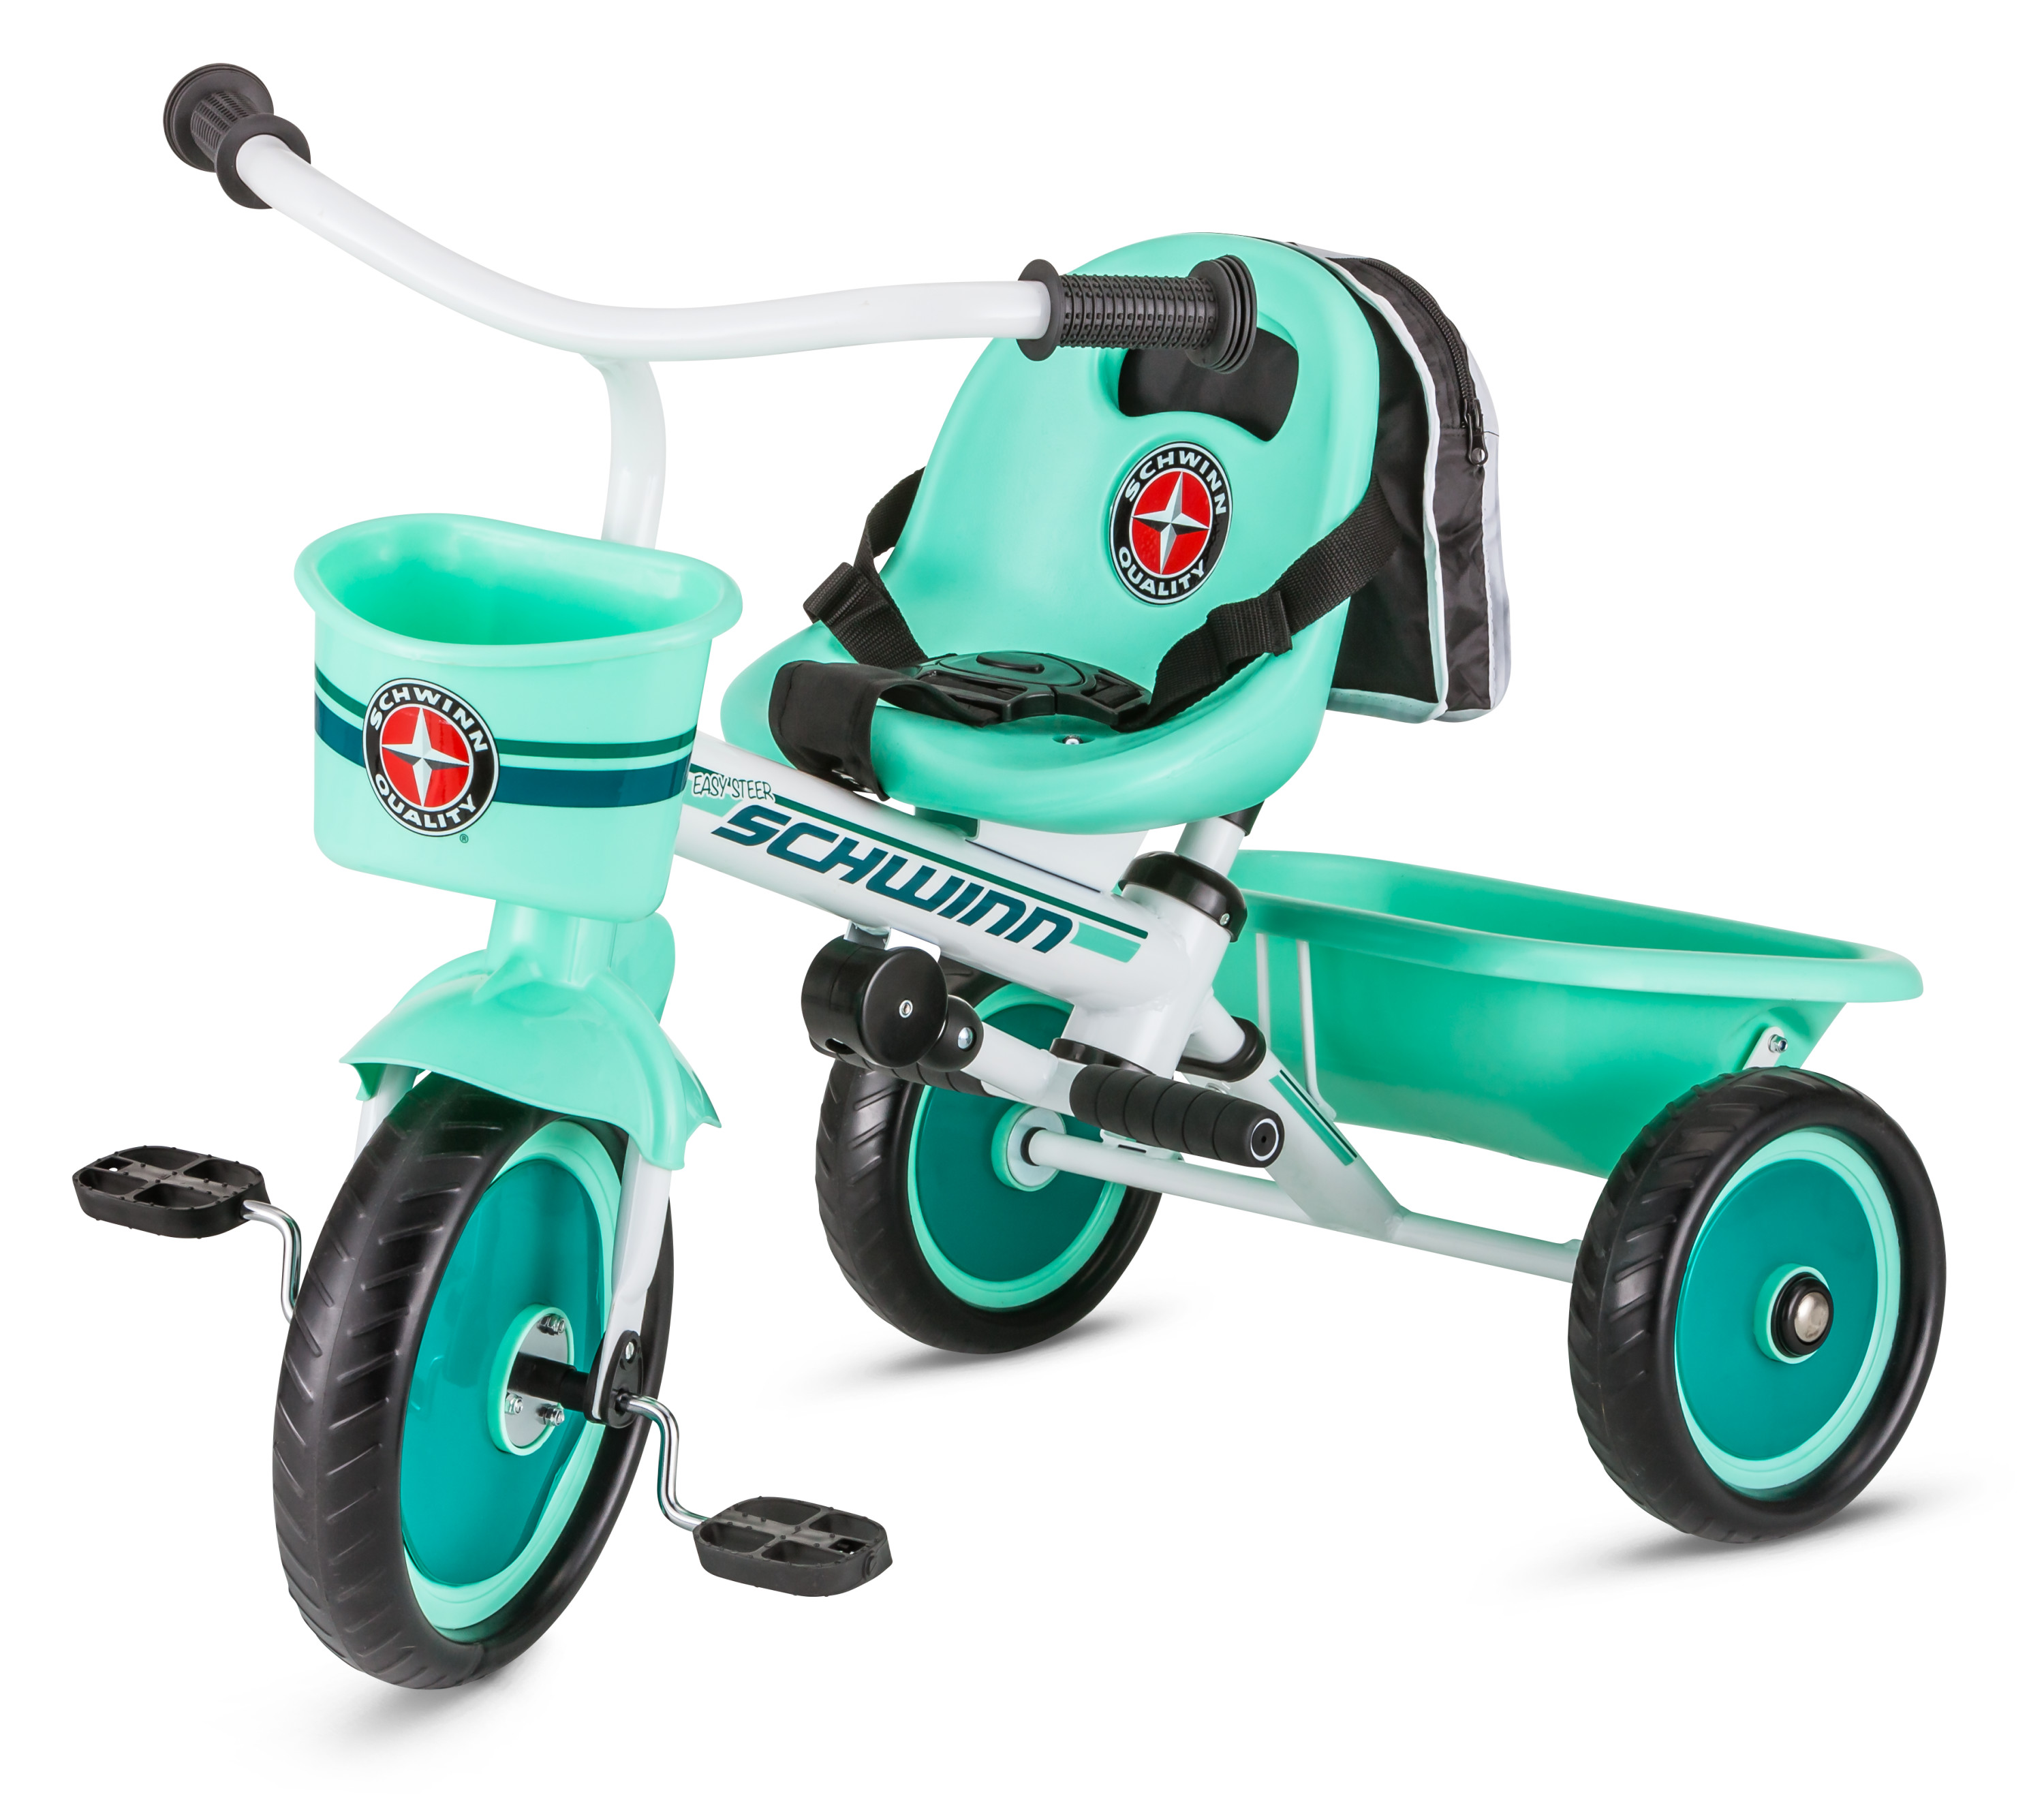 Schwinn Easy-Steer Tricycle with Push/Steer Handle, ages 2 - 4, teal, toddler bike - image 1 of 9